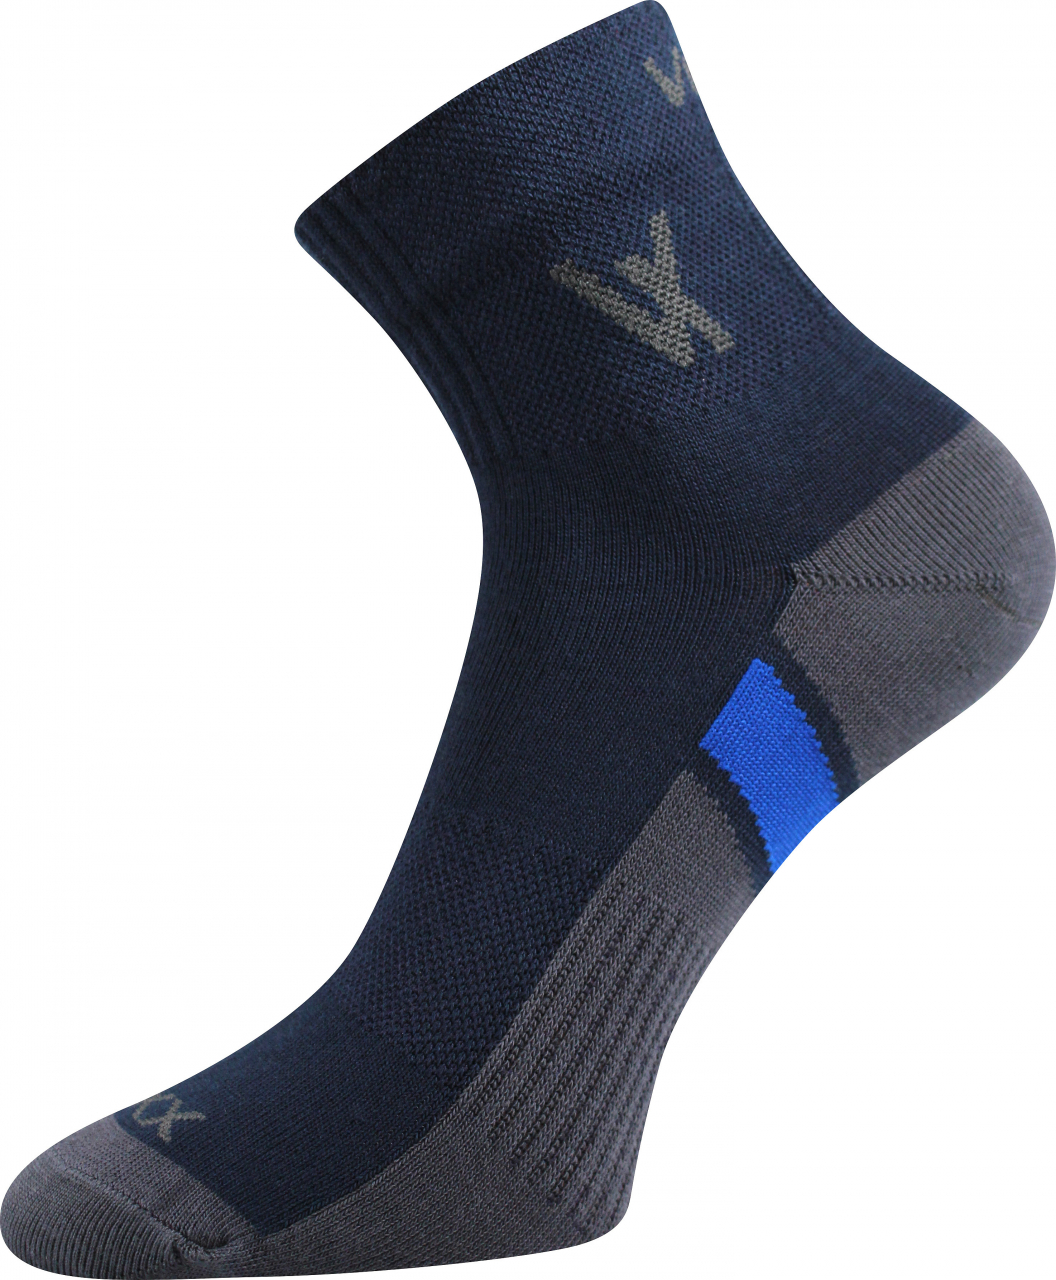 Ponožky sportovní Voxx Neo - navy, 39-42